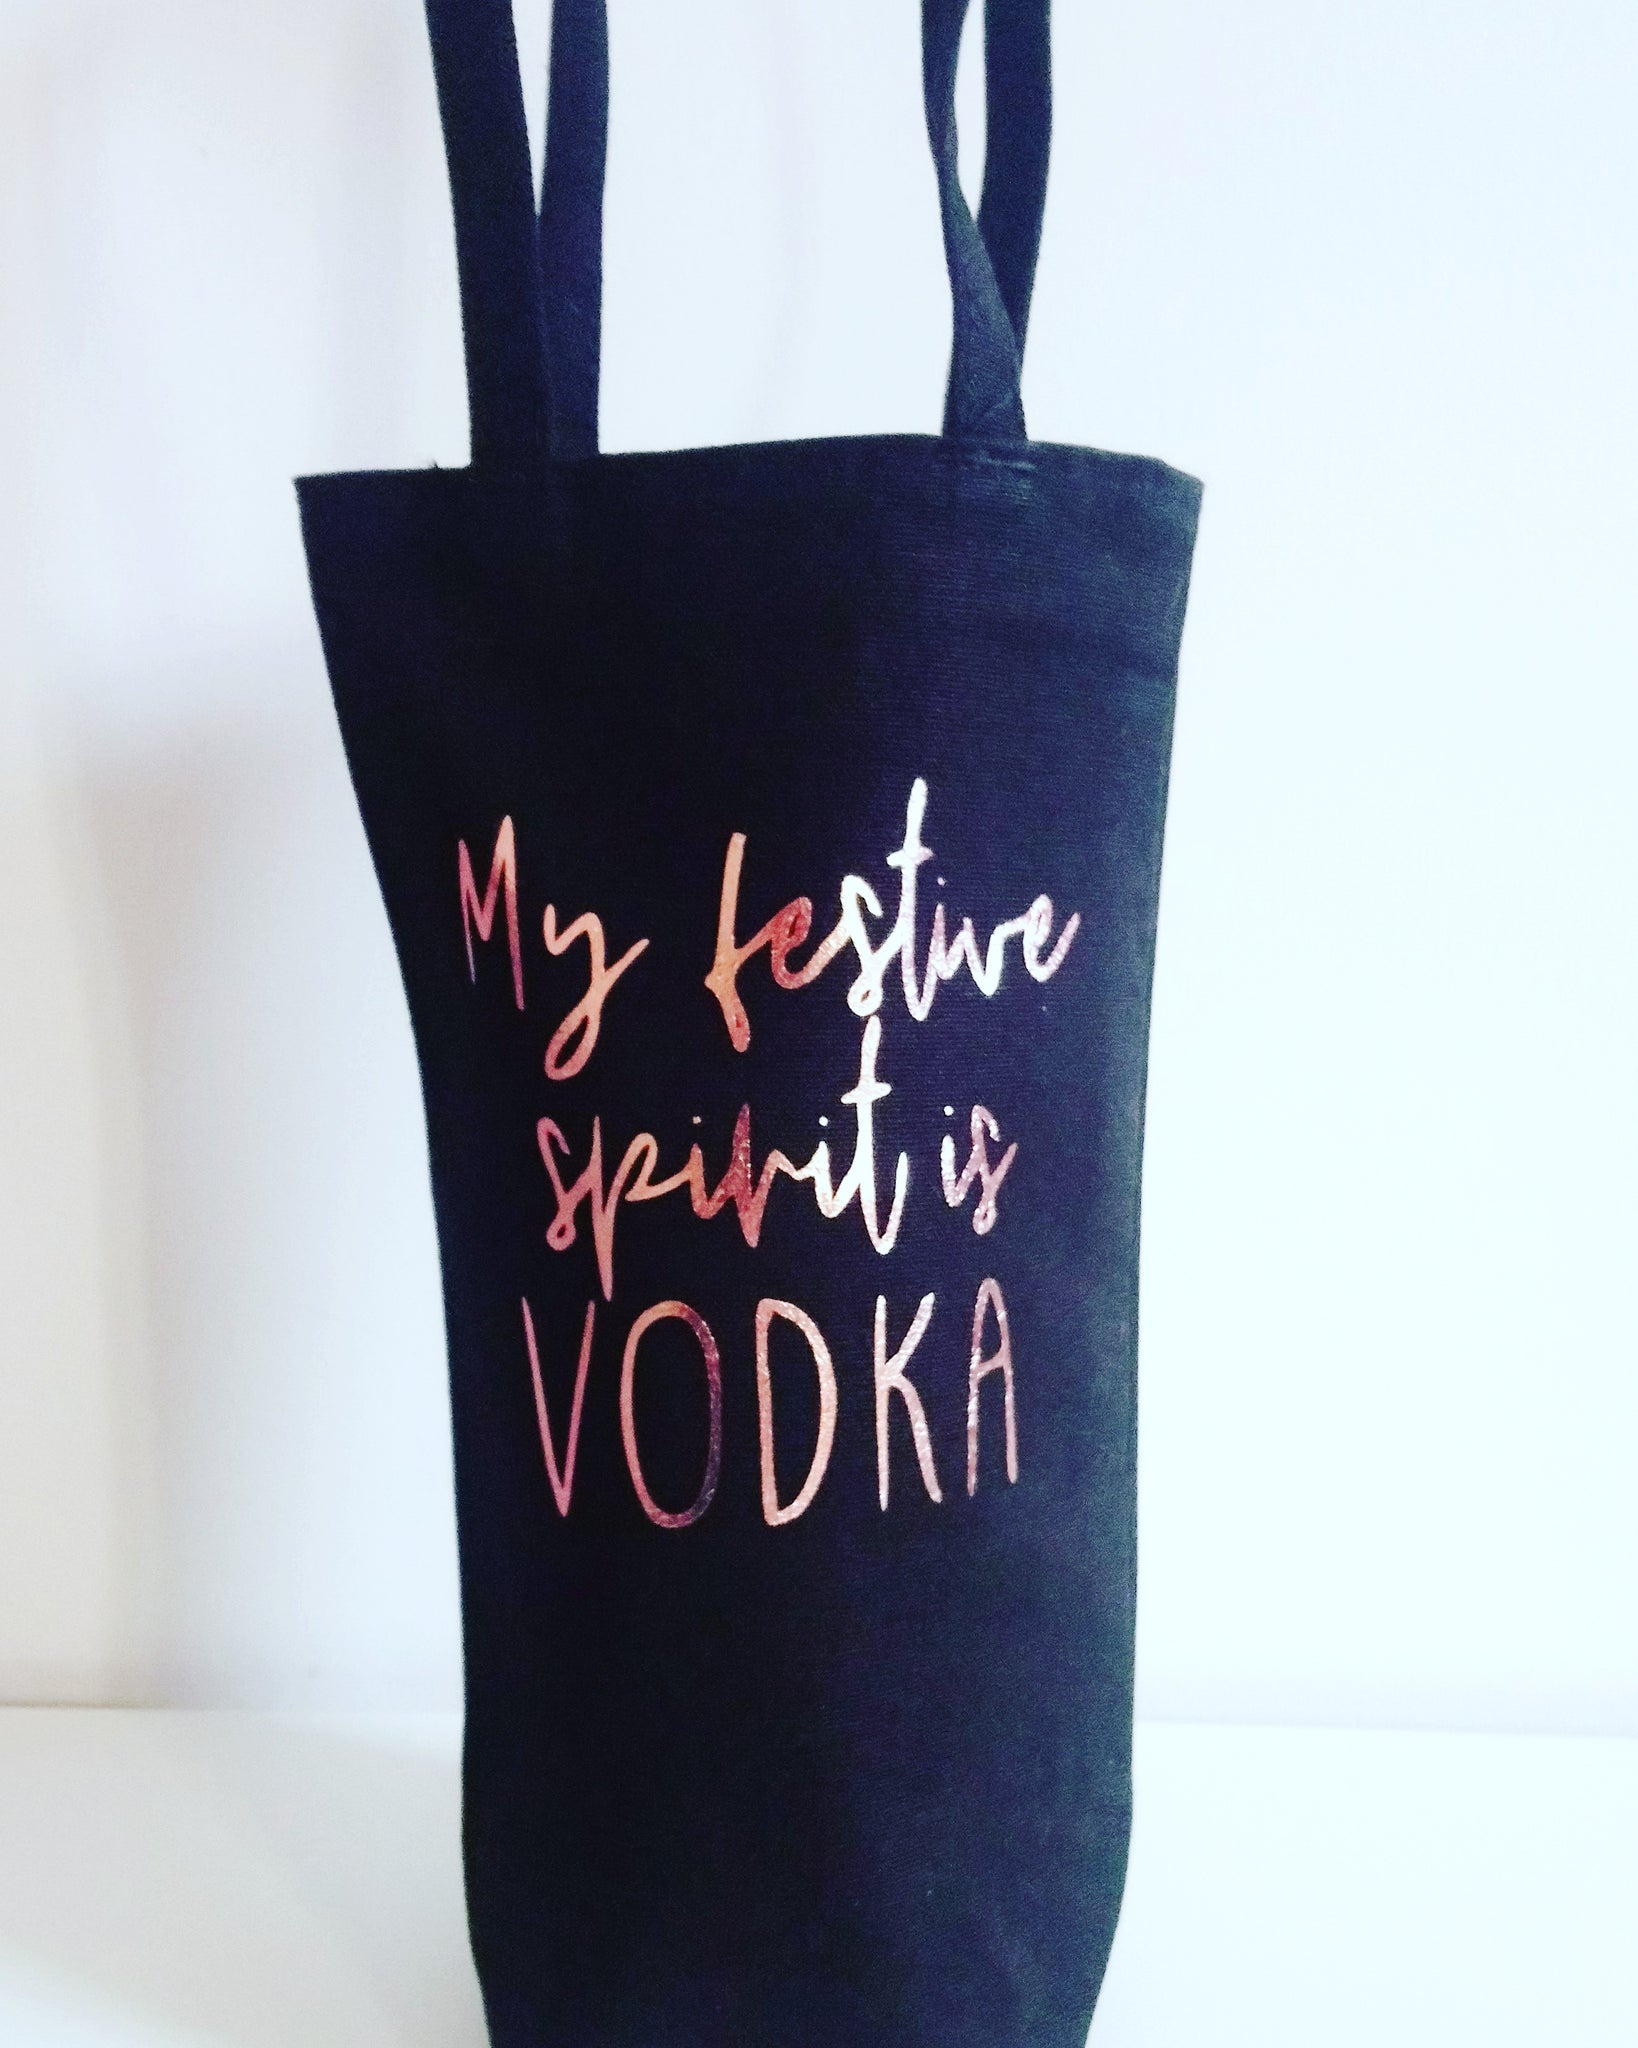 "My festive spirit is vodka" bottle bag